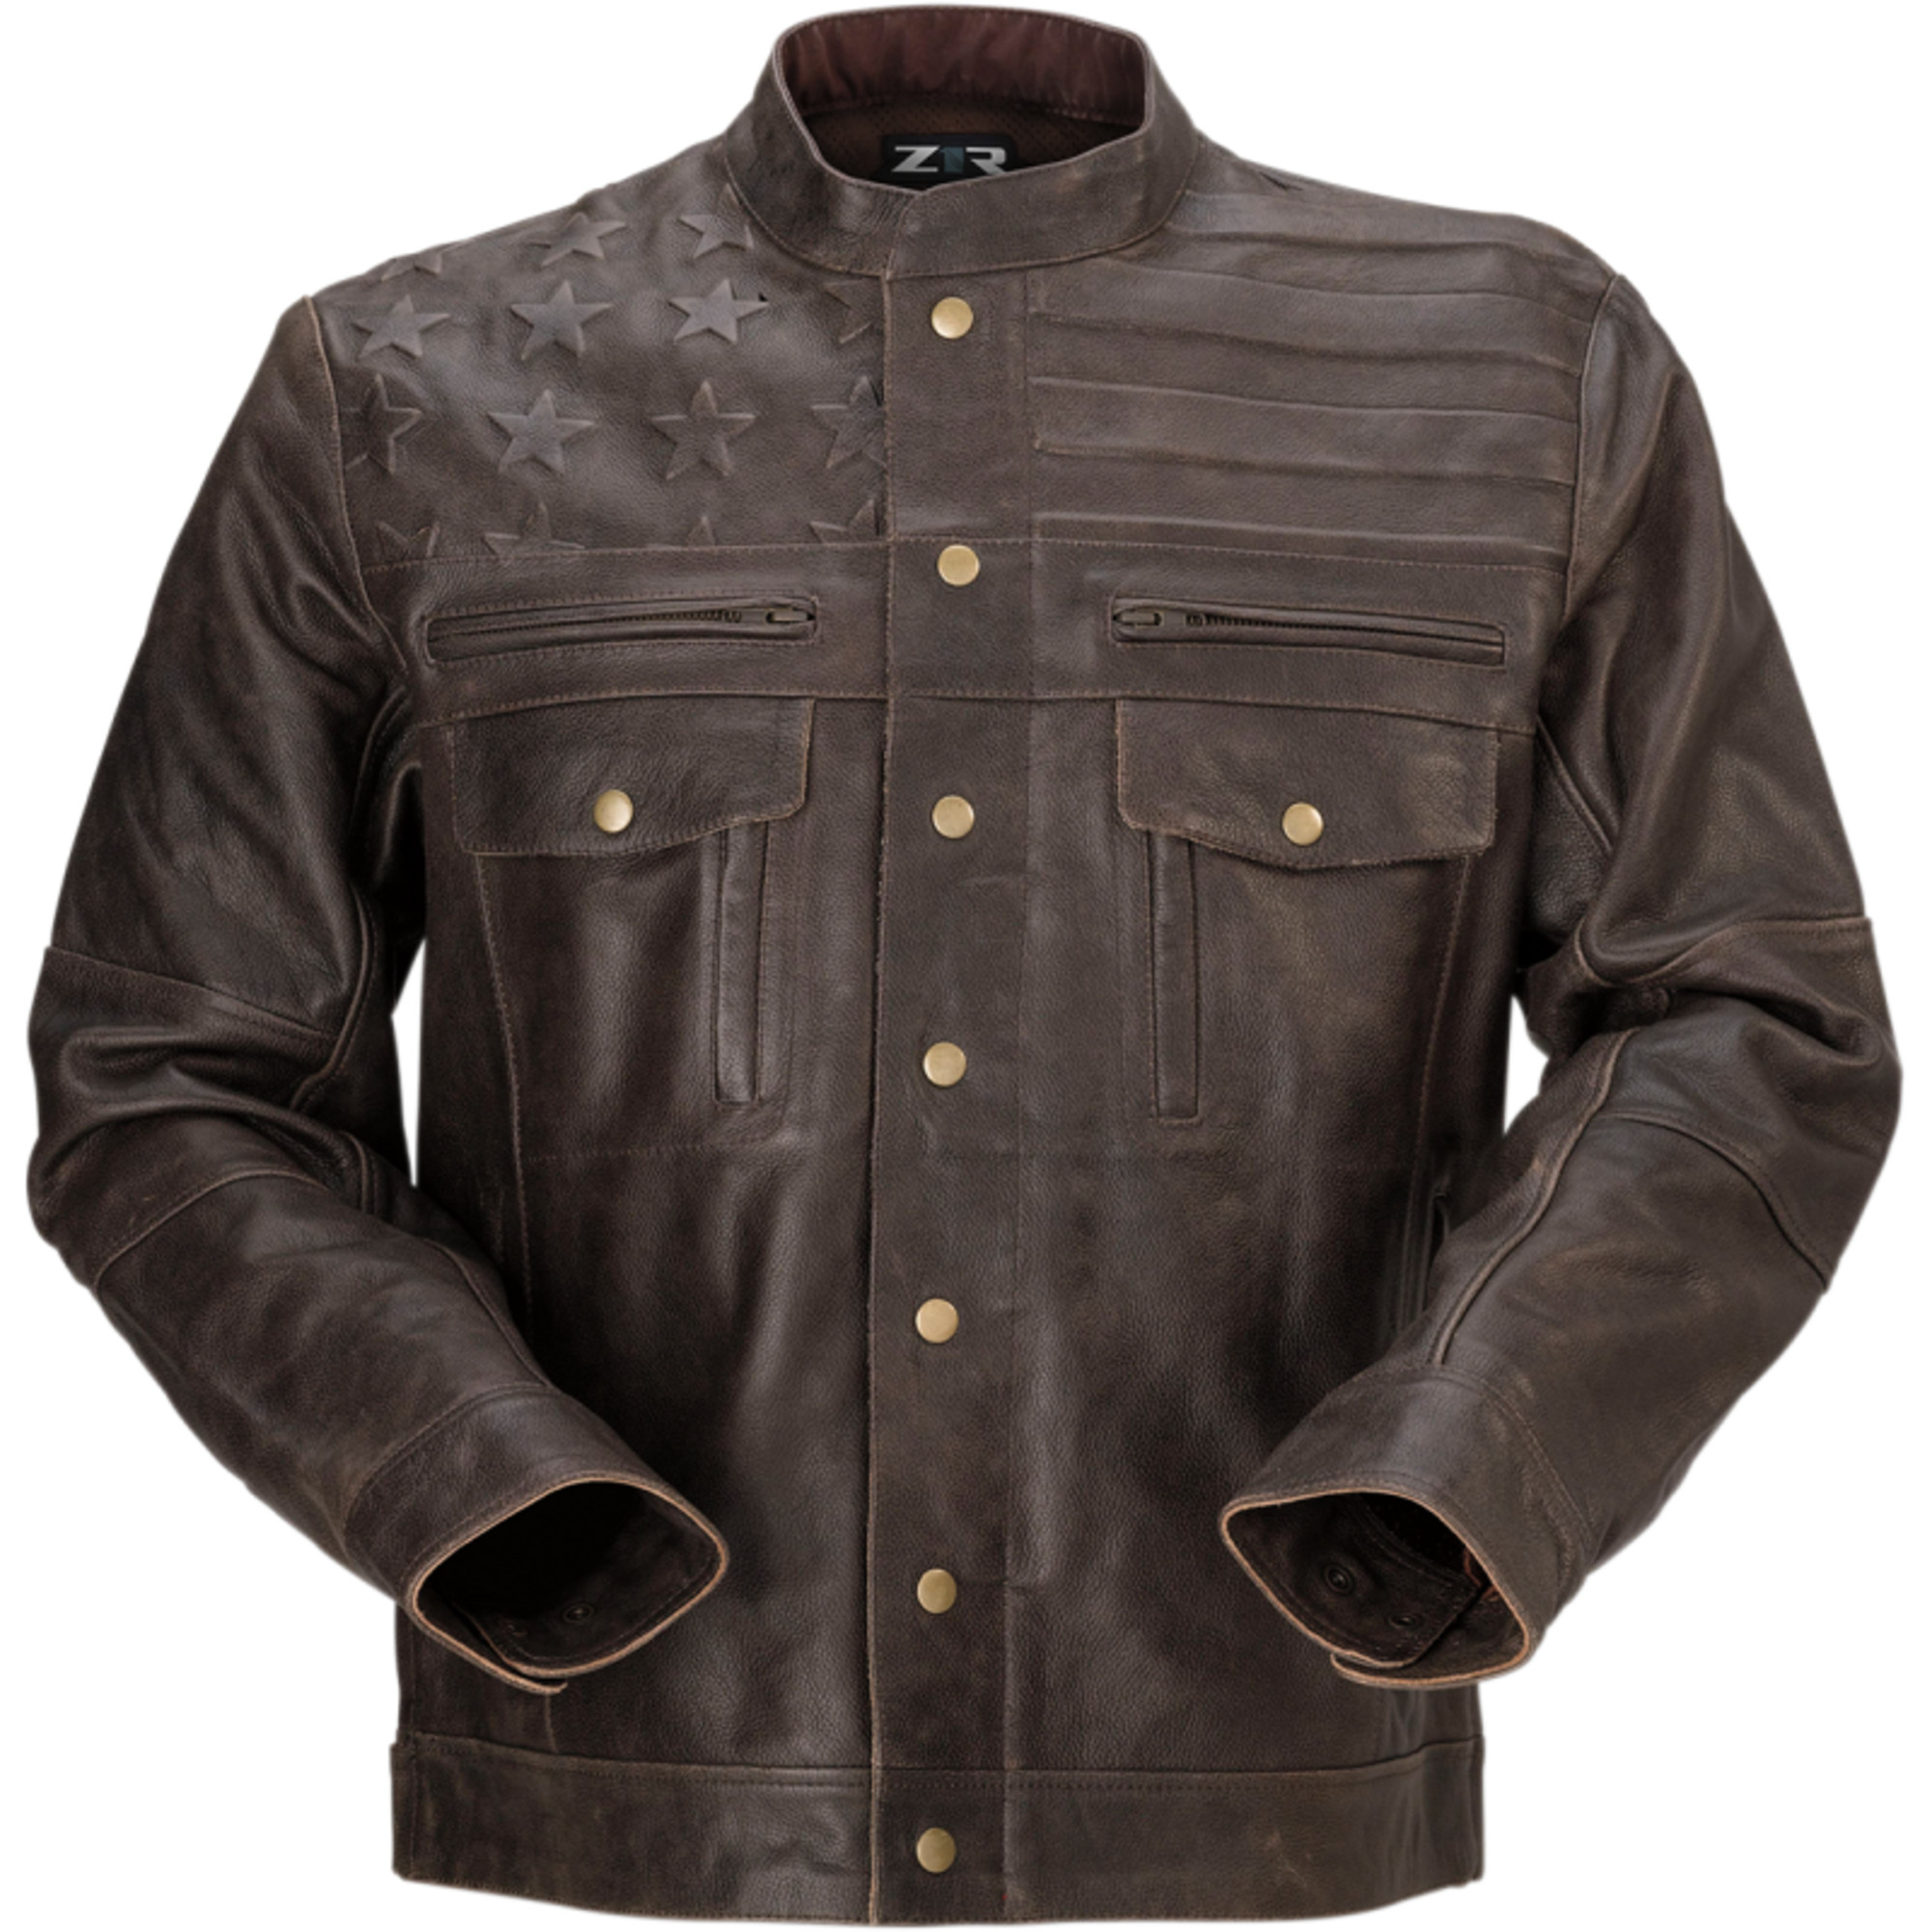 z1r leather jackets for men deagle